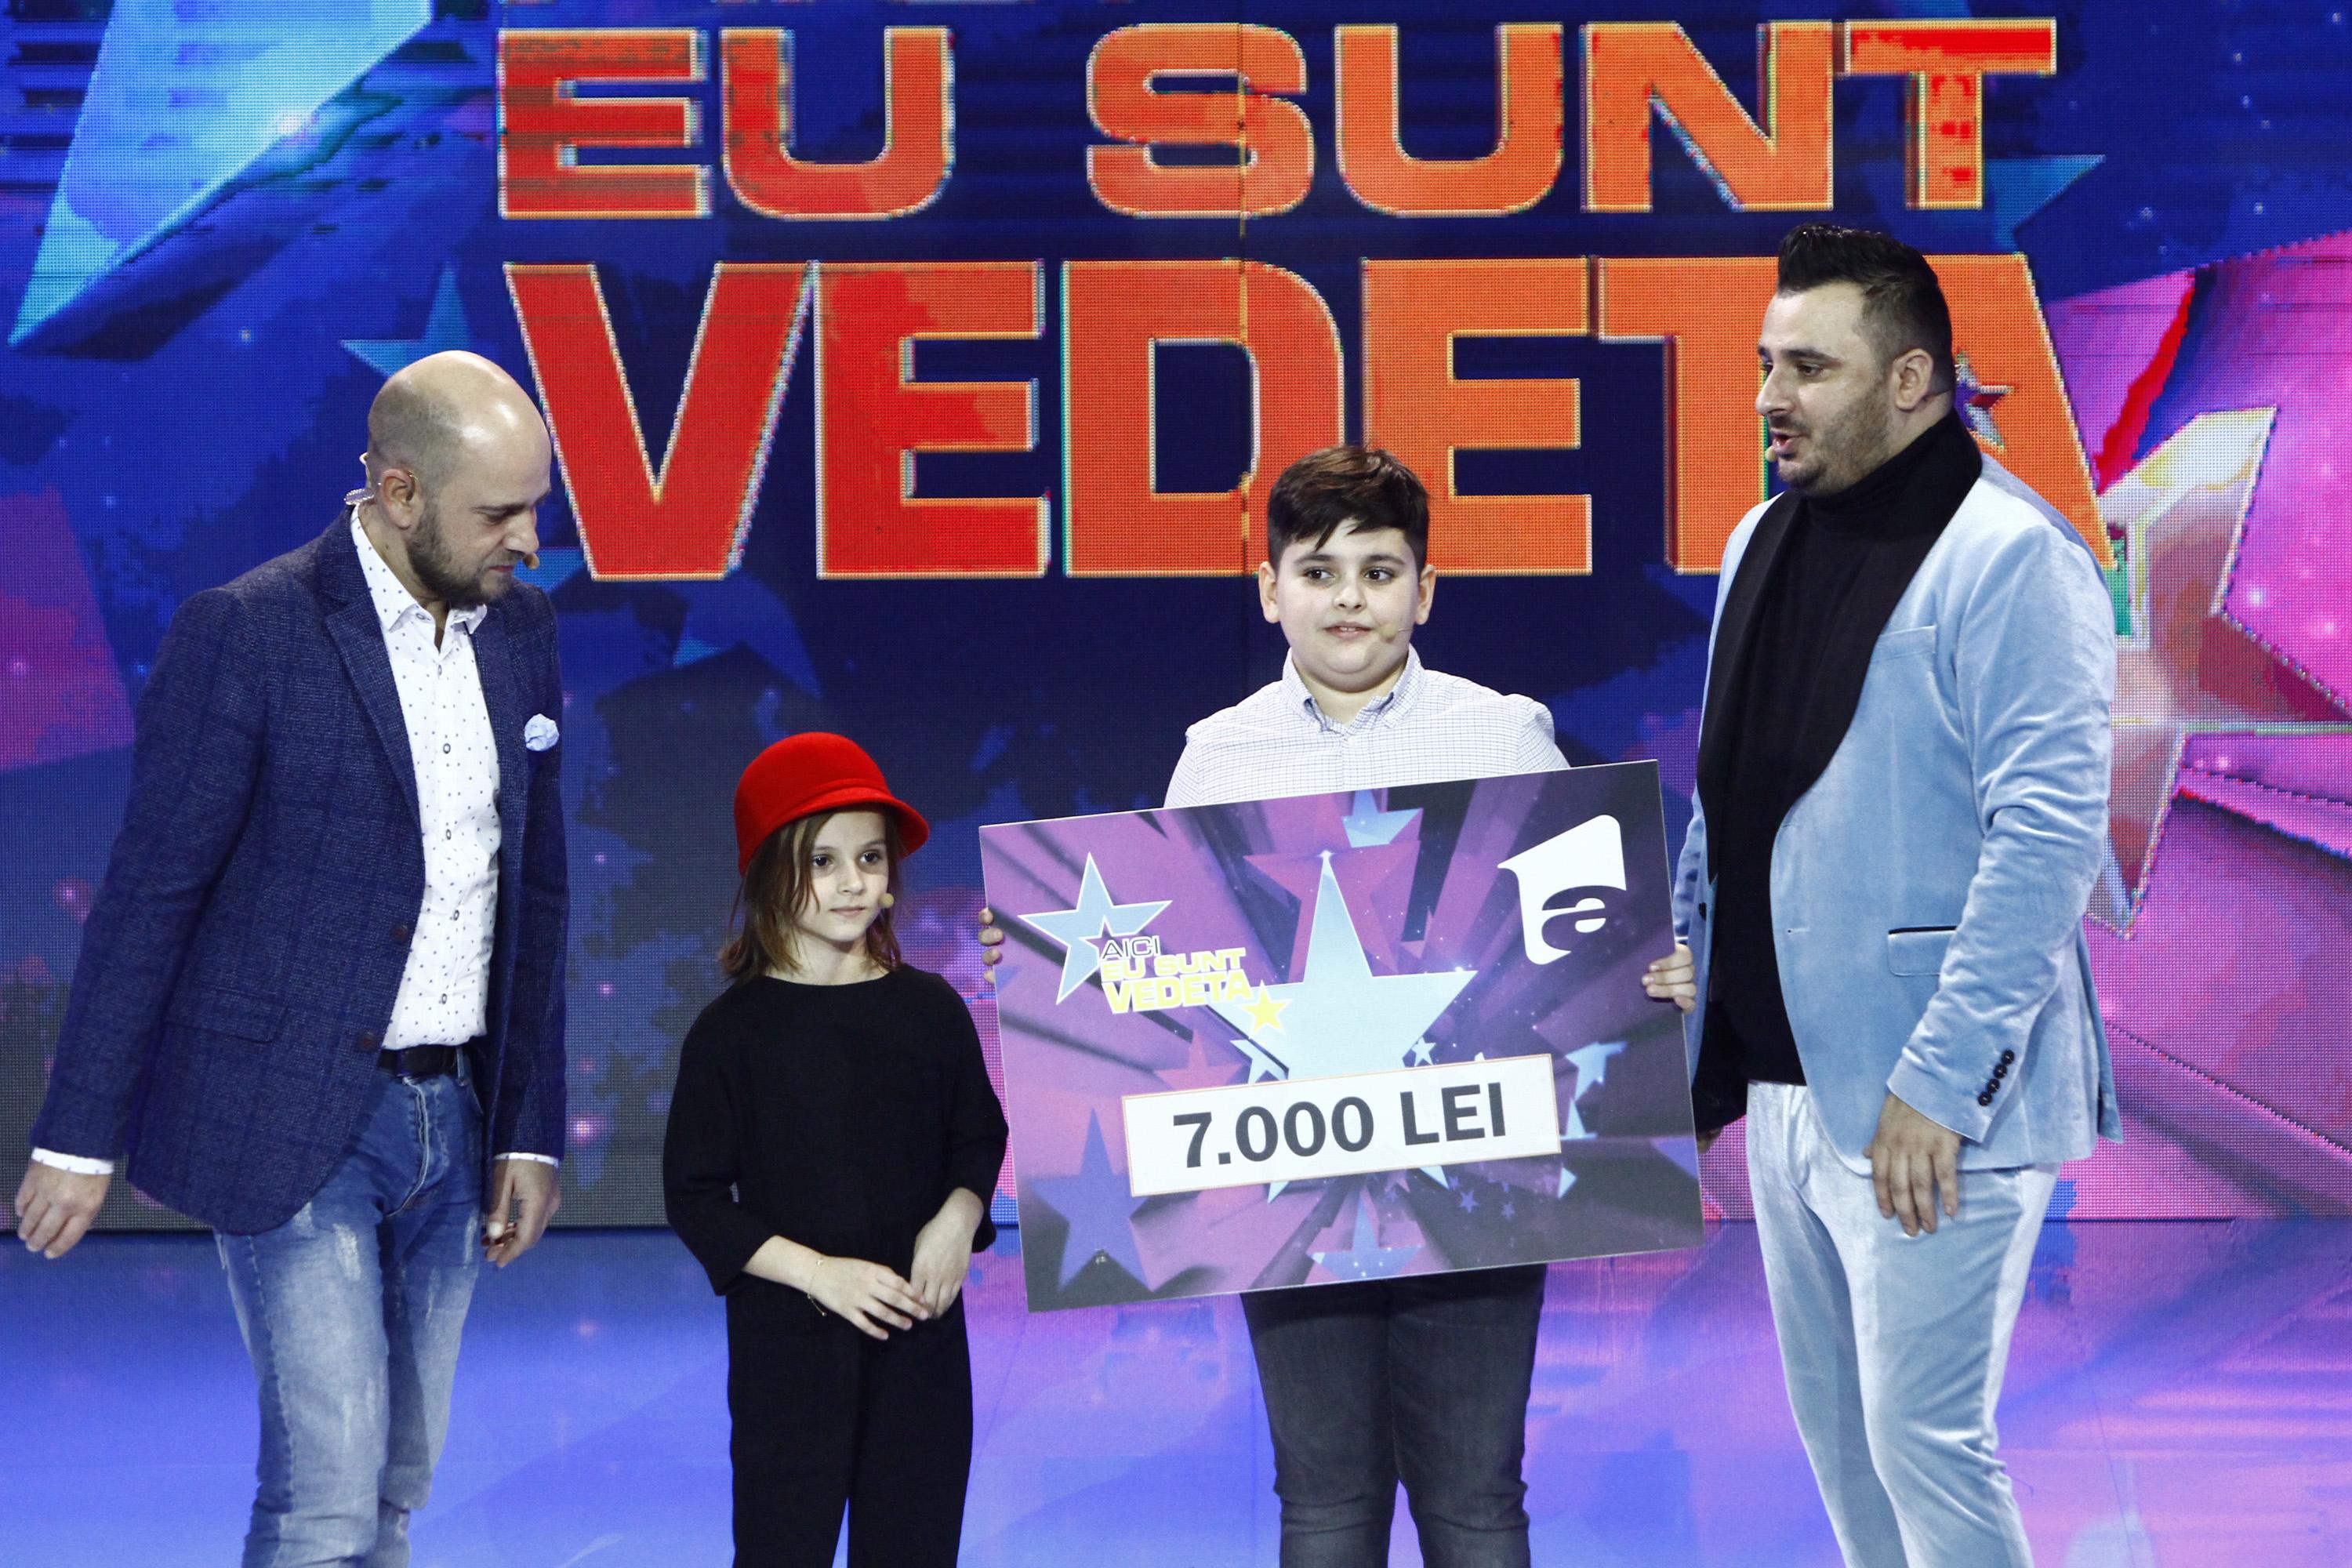 Liviu Guță are cu ce se mândri!  copiii săi, Maria (5 ani) și Mario (10 ani) au câștigat ediția a patra  a emisiunii  „Aici eu sunt vedetă”!